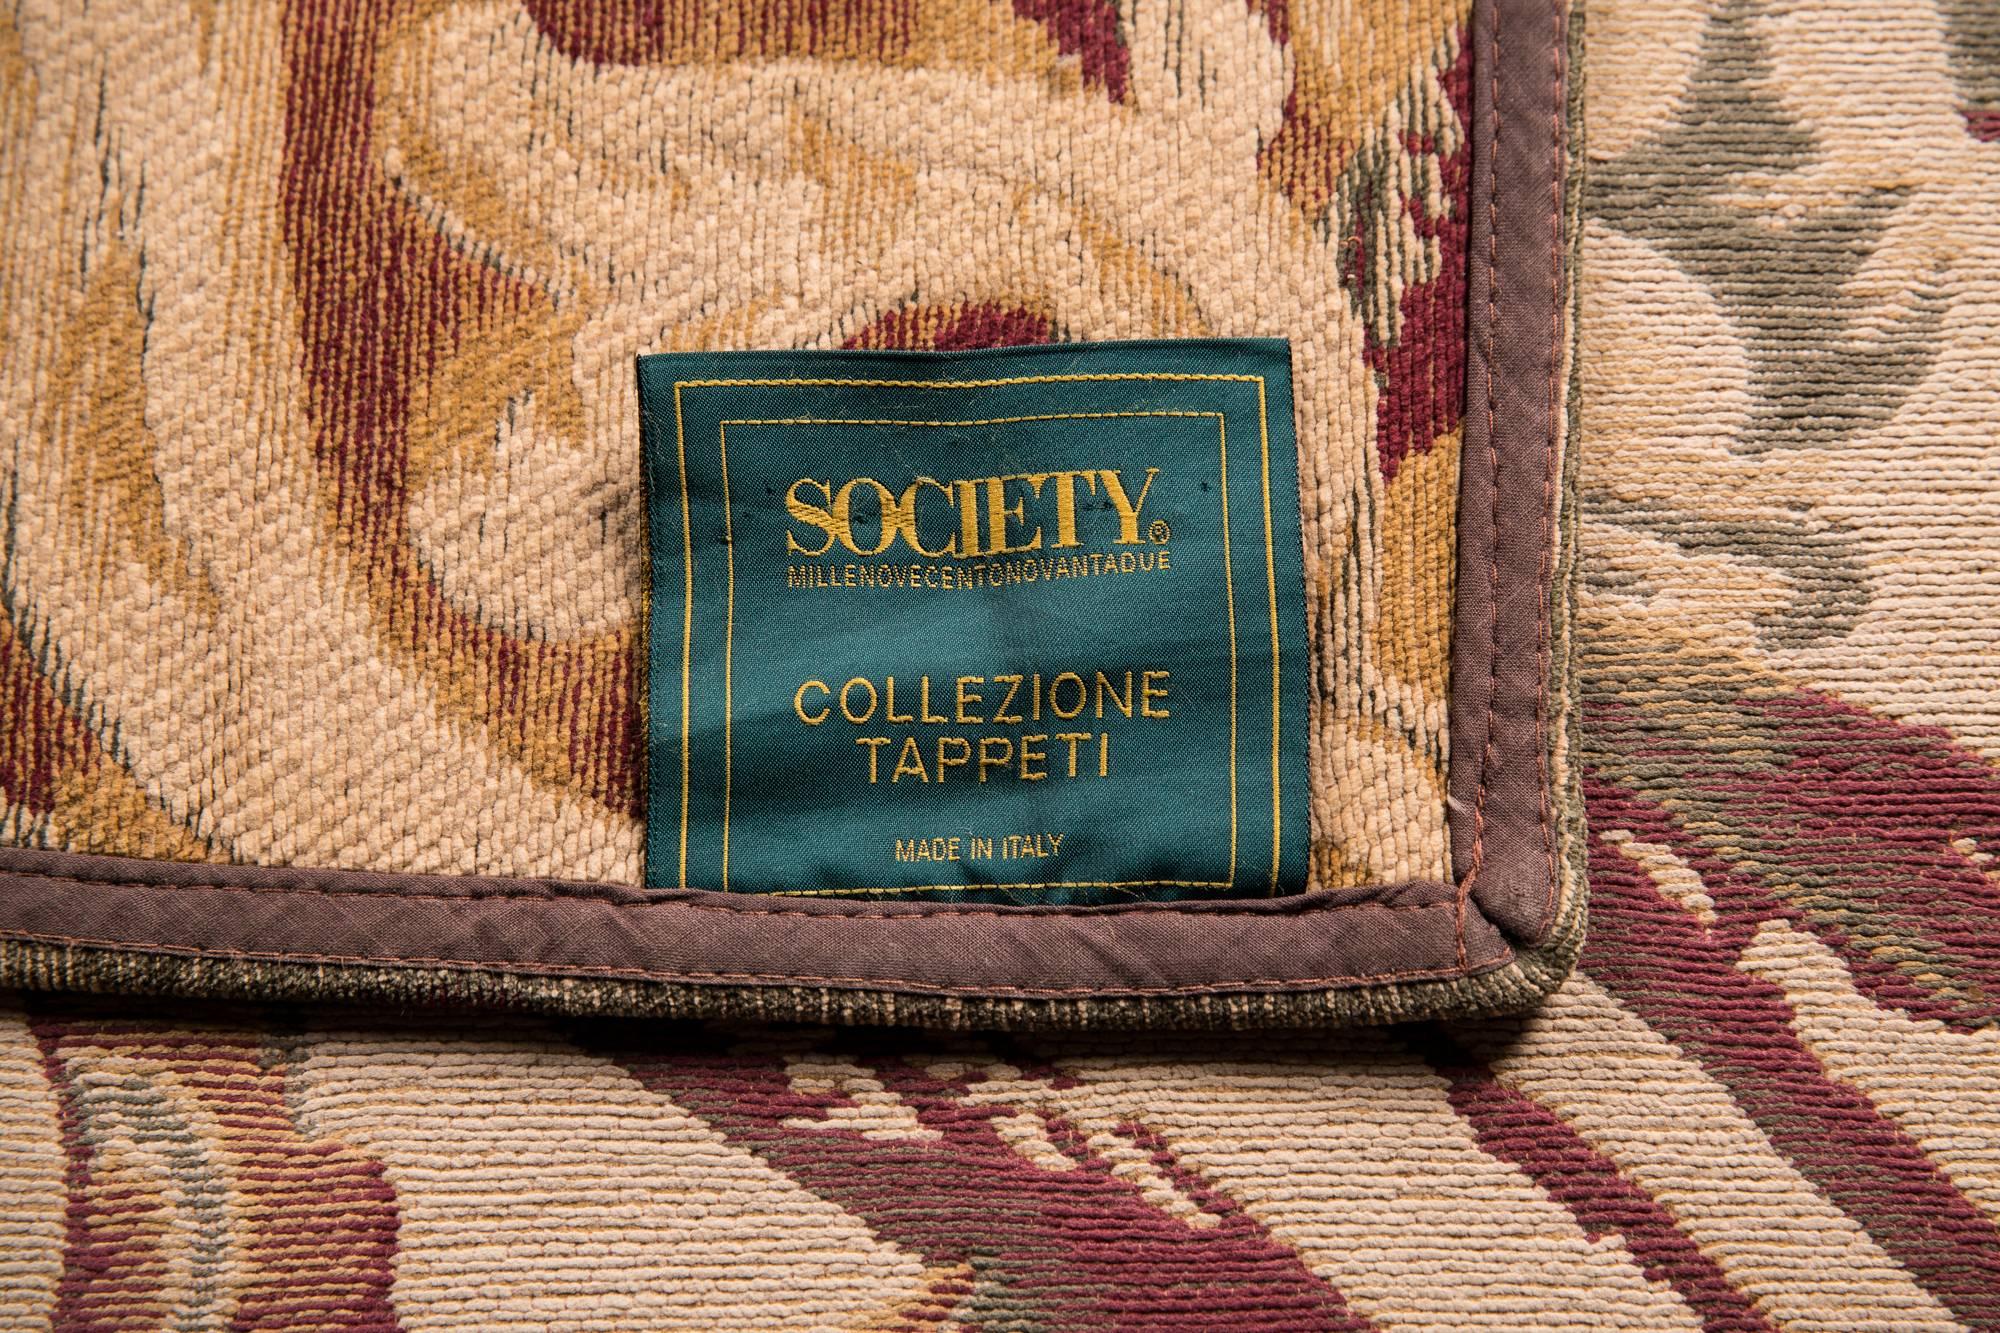 Exclusive Italian Carpet by Society Collezione Tappeti, 170cm x 400cm 1